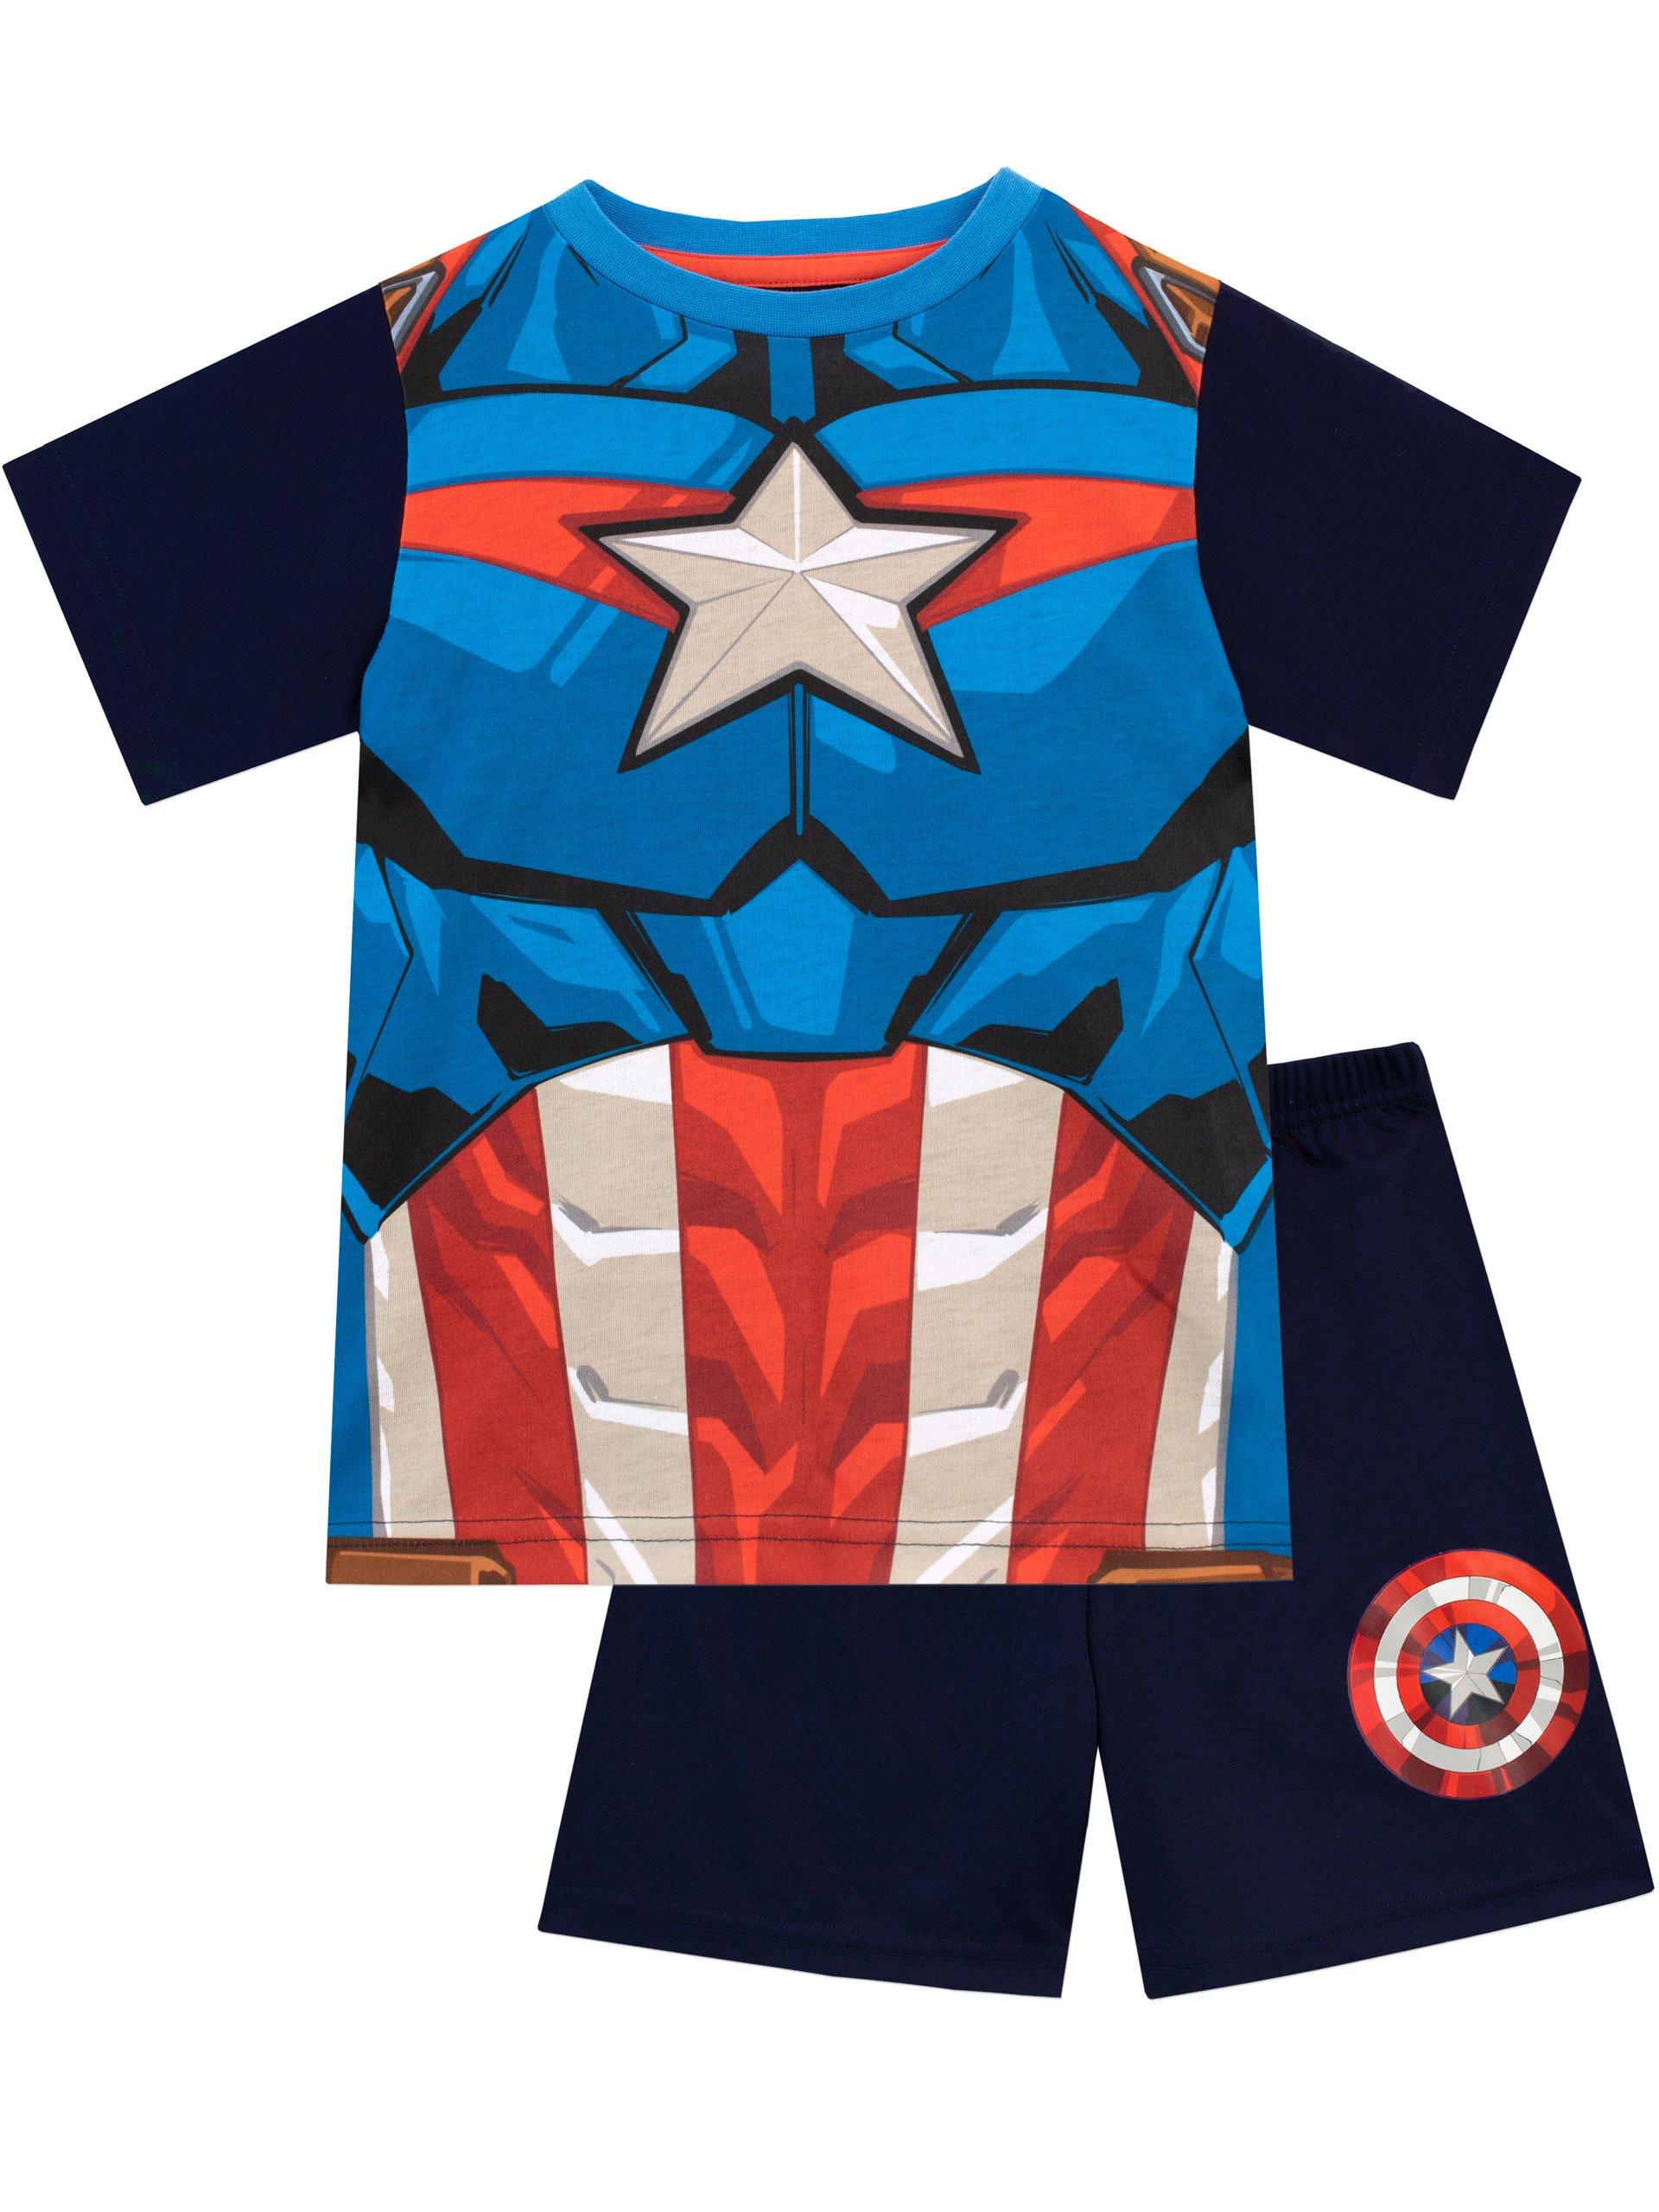 Captain America Short Pyjamas